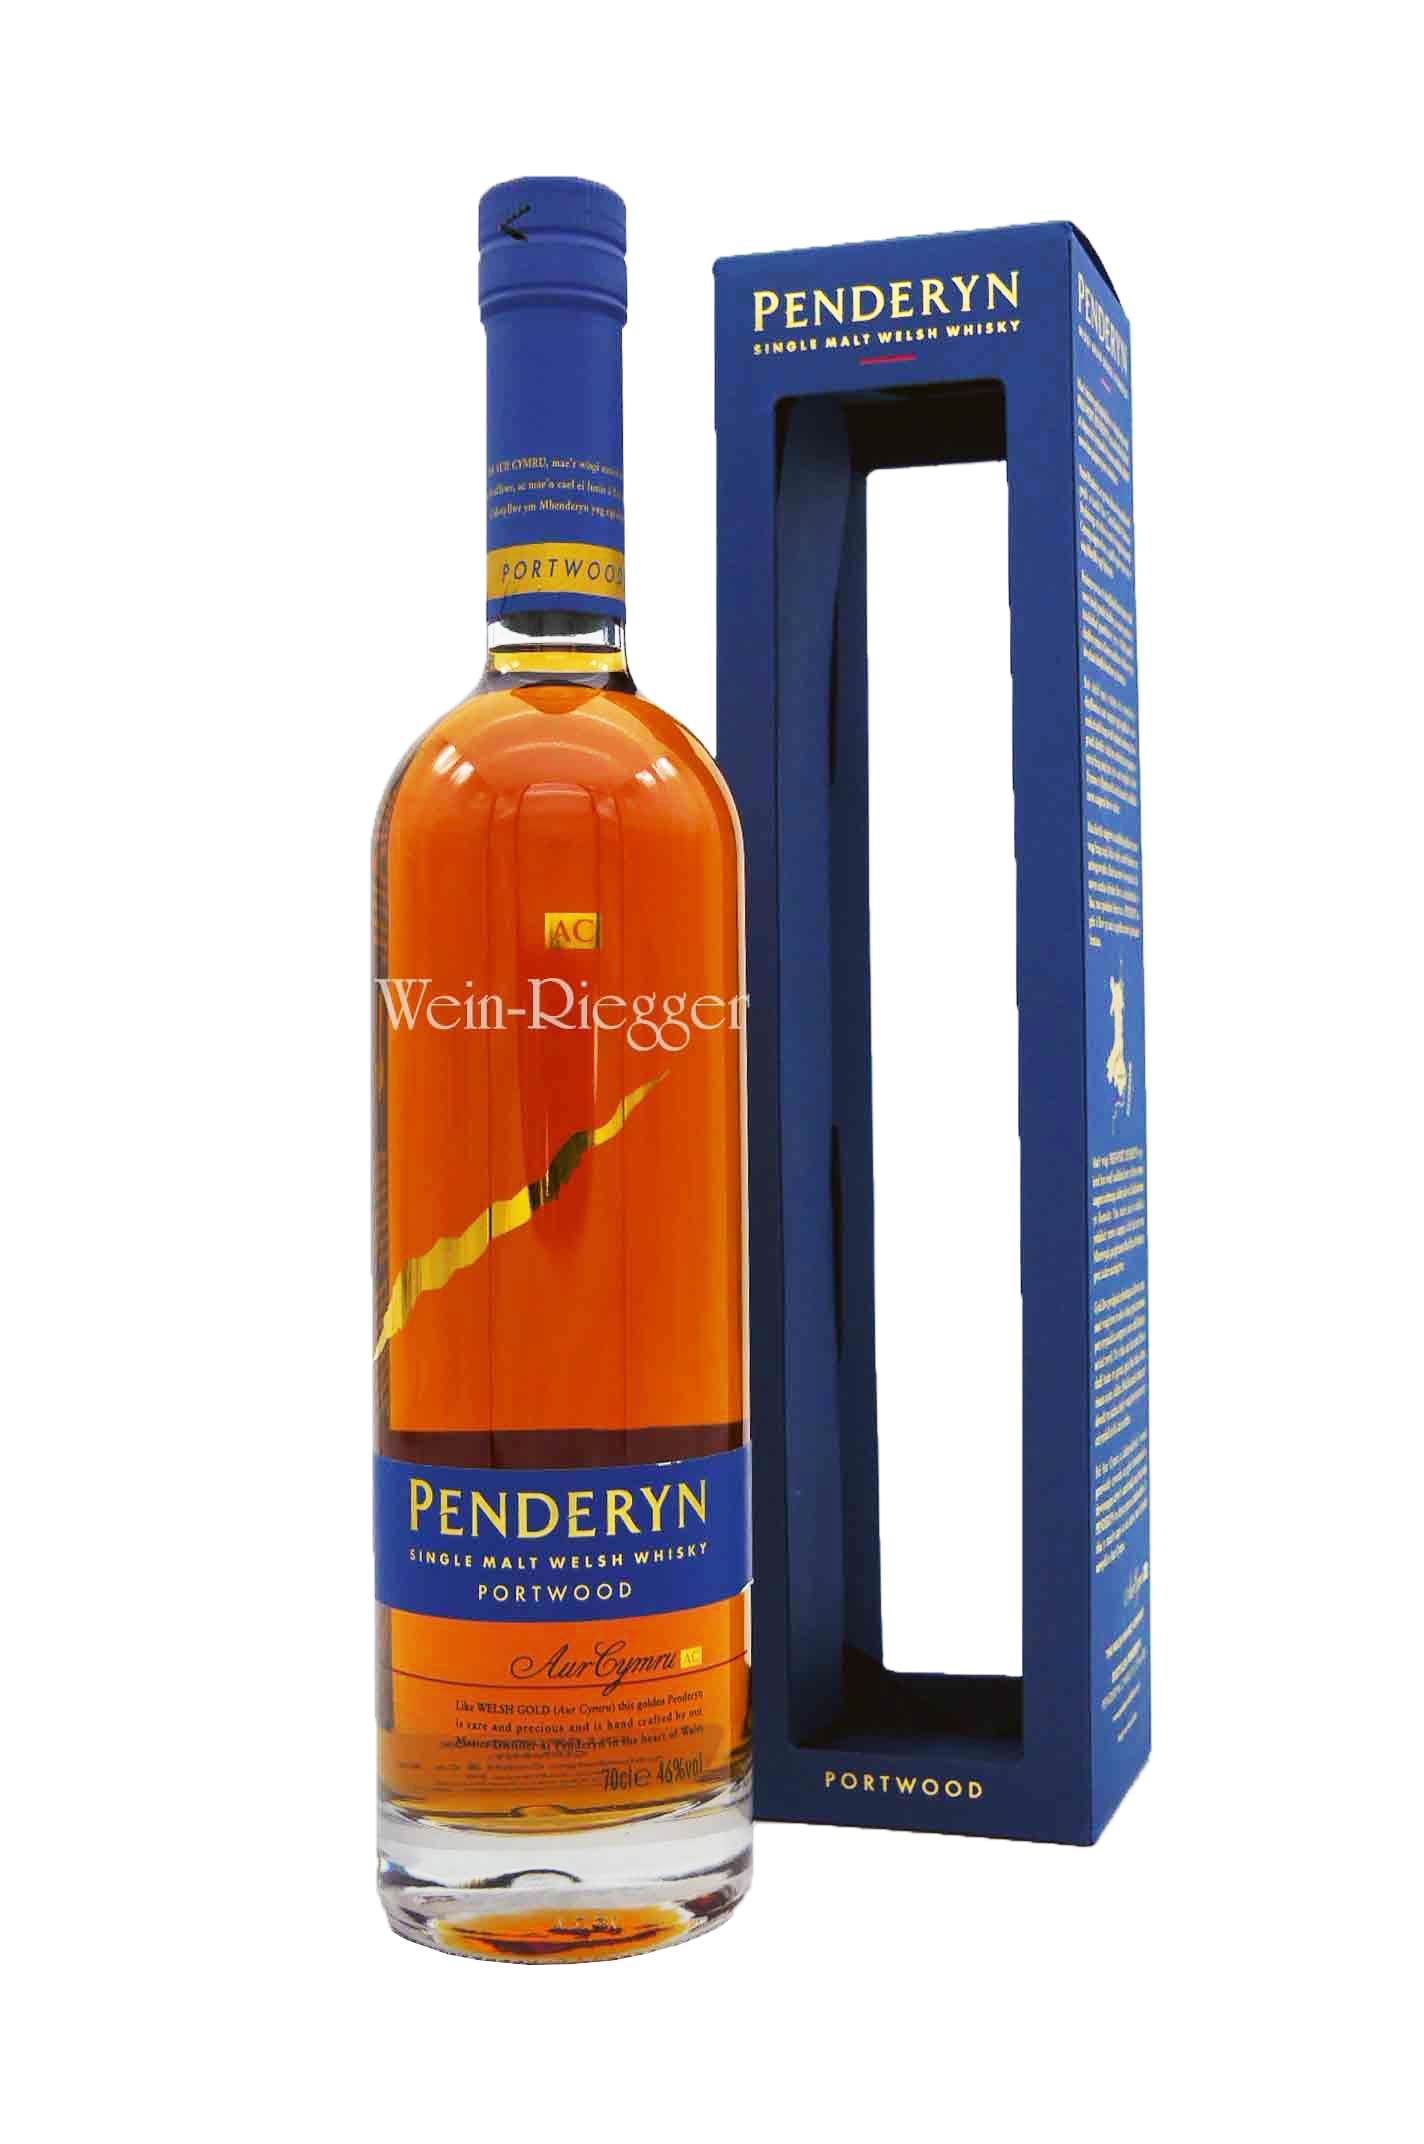 Penderyn Portwood Single Malt Whisky (Wales)